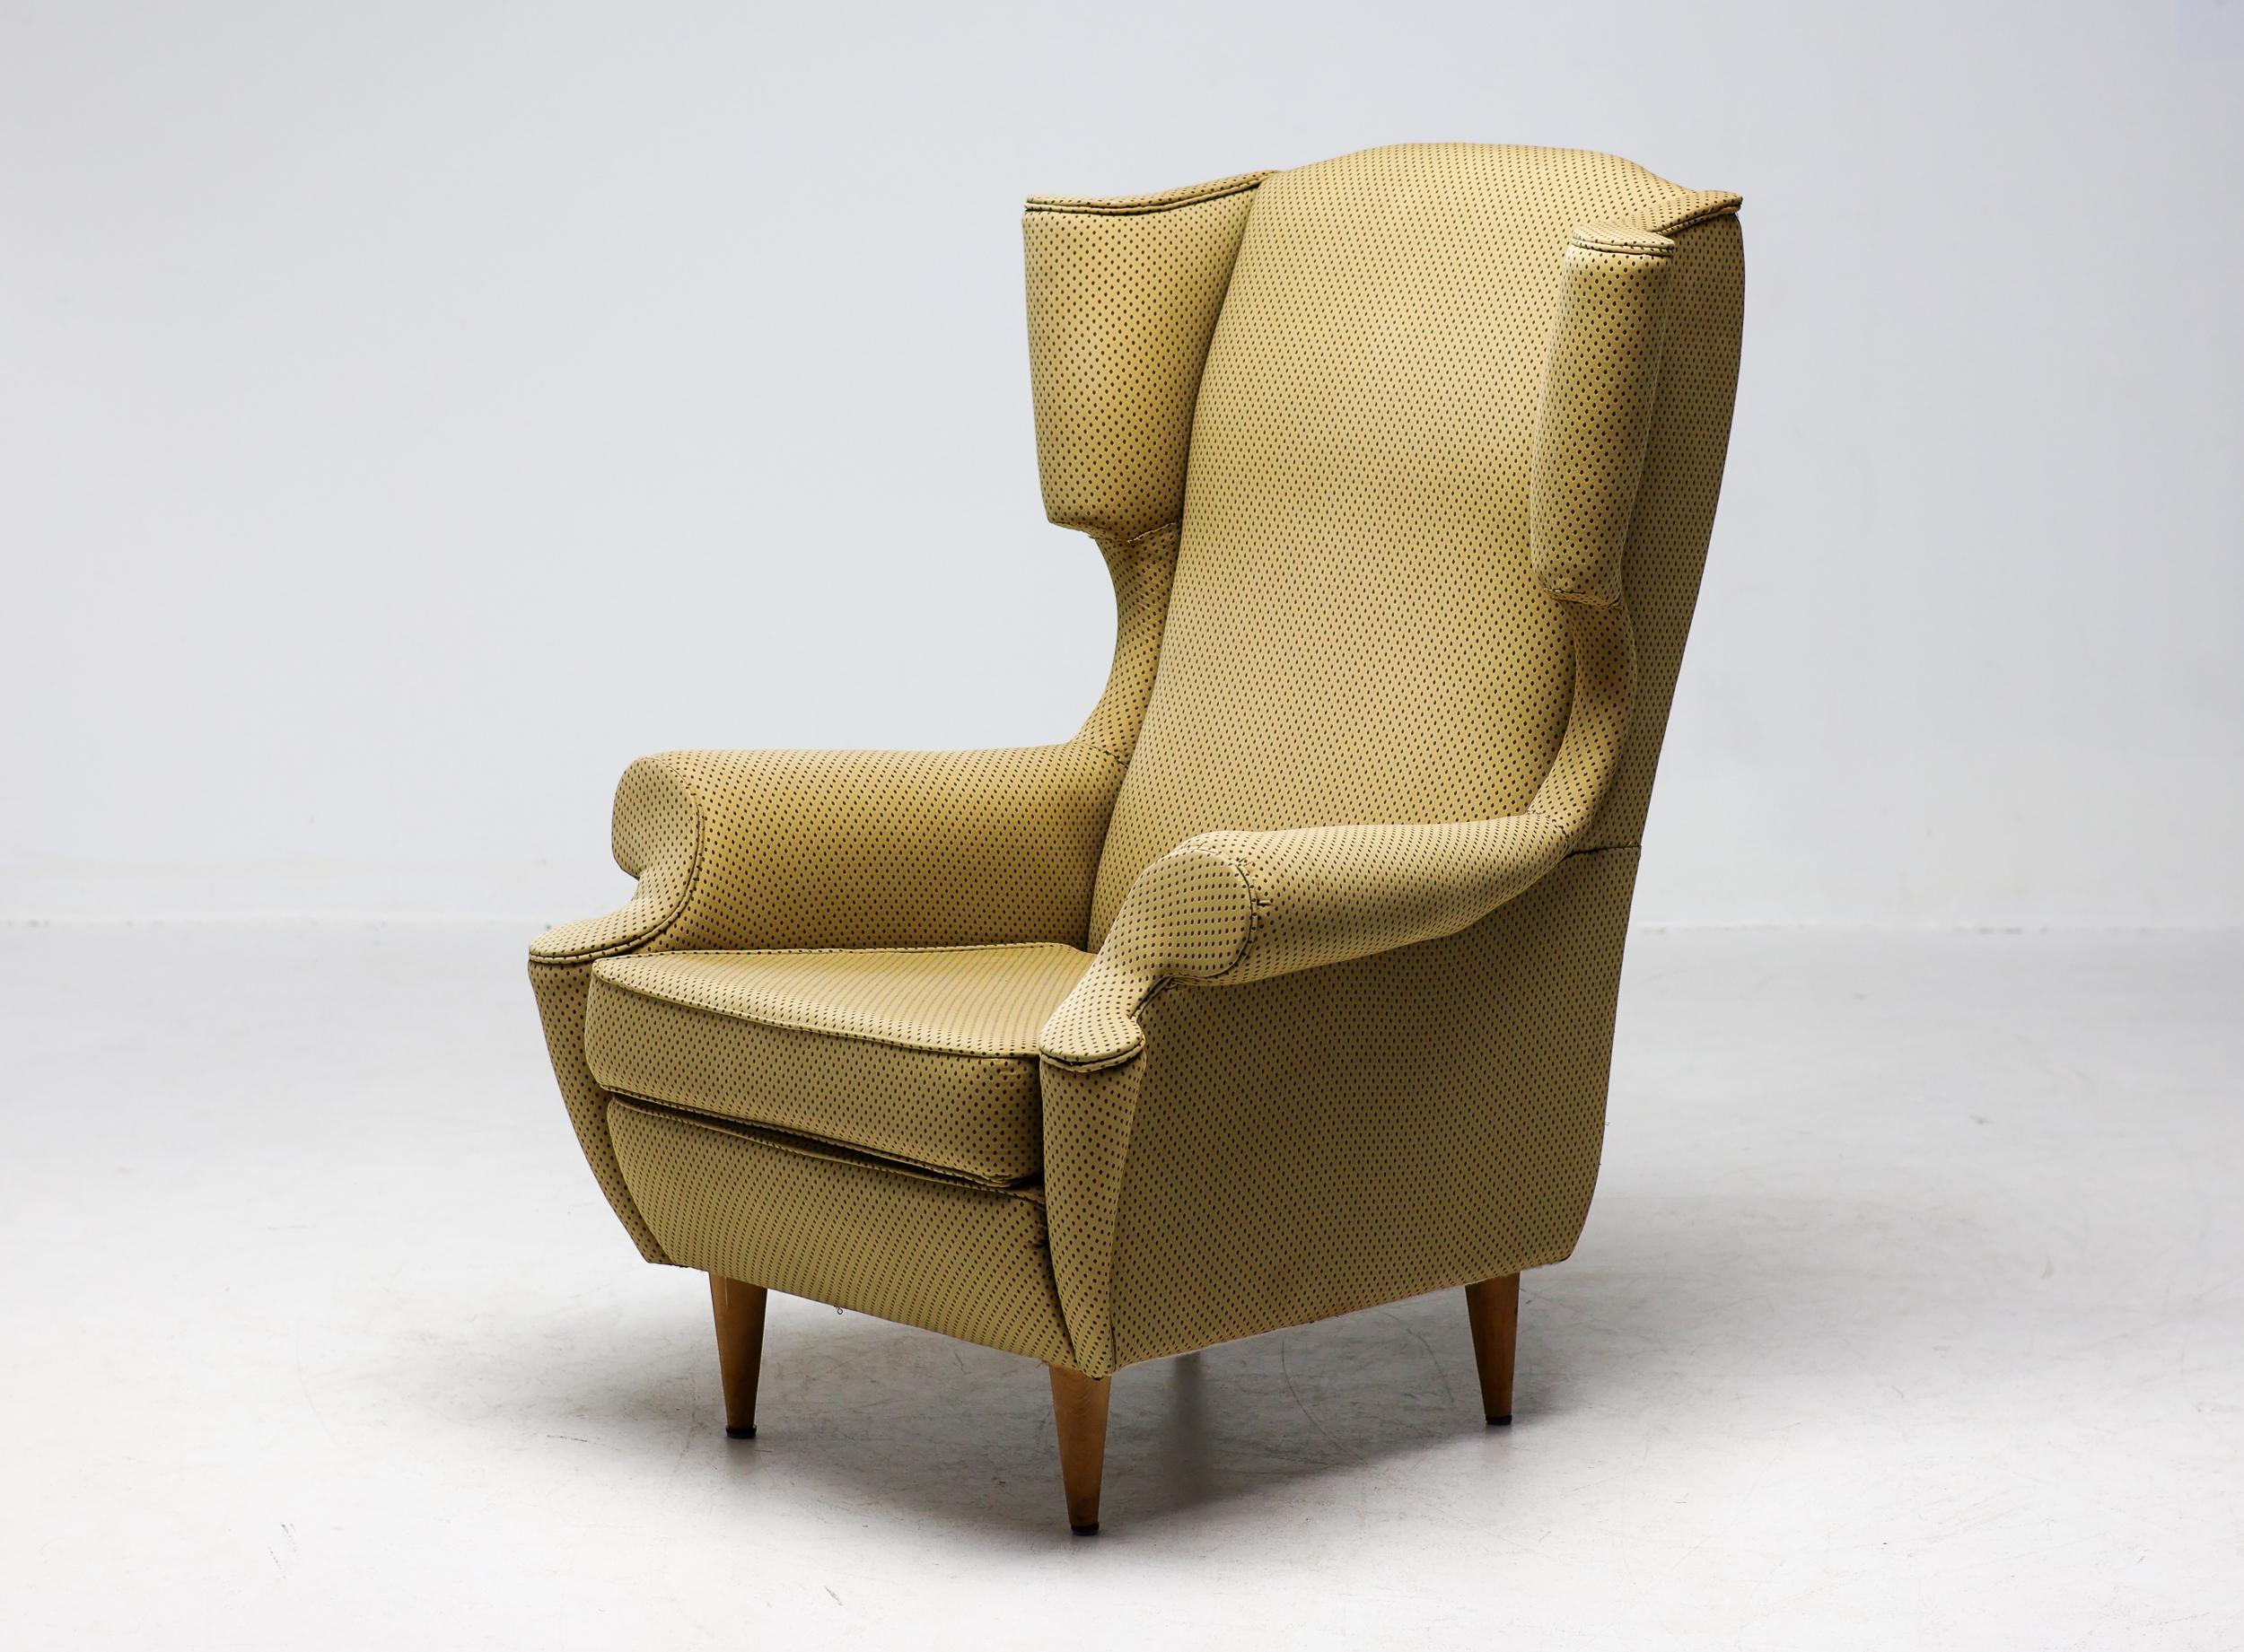 Chaise à dossier, produite par I+I A. Bergamo, Italie, vers 1950.
Grand fauteuil très confortable, retapissé de façon assez médiocre il y a quelque temps. Le tissu n'est ni abîmé ni sali, mais le travail n'a pas été effectué selon nos normes et le